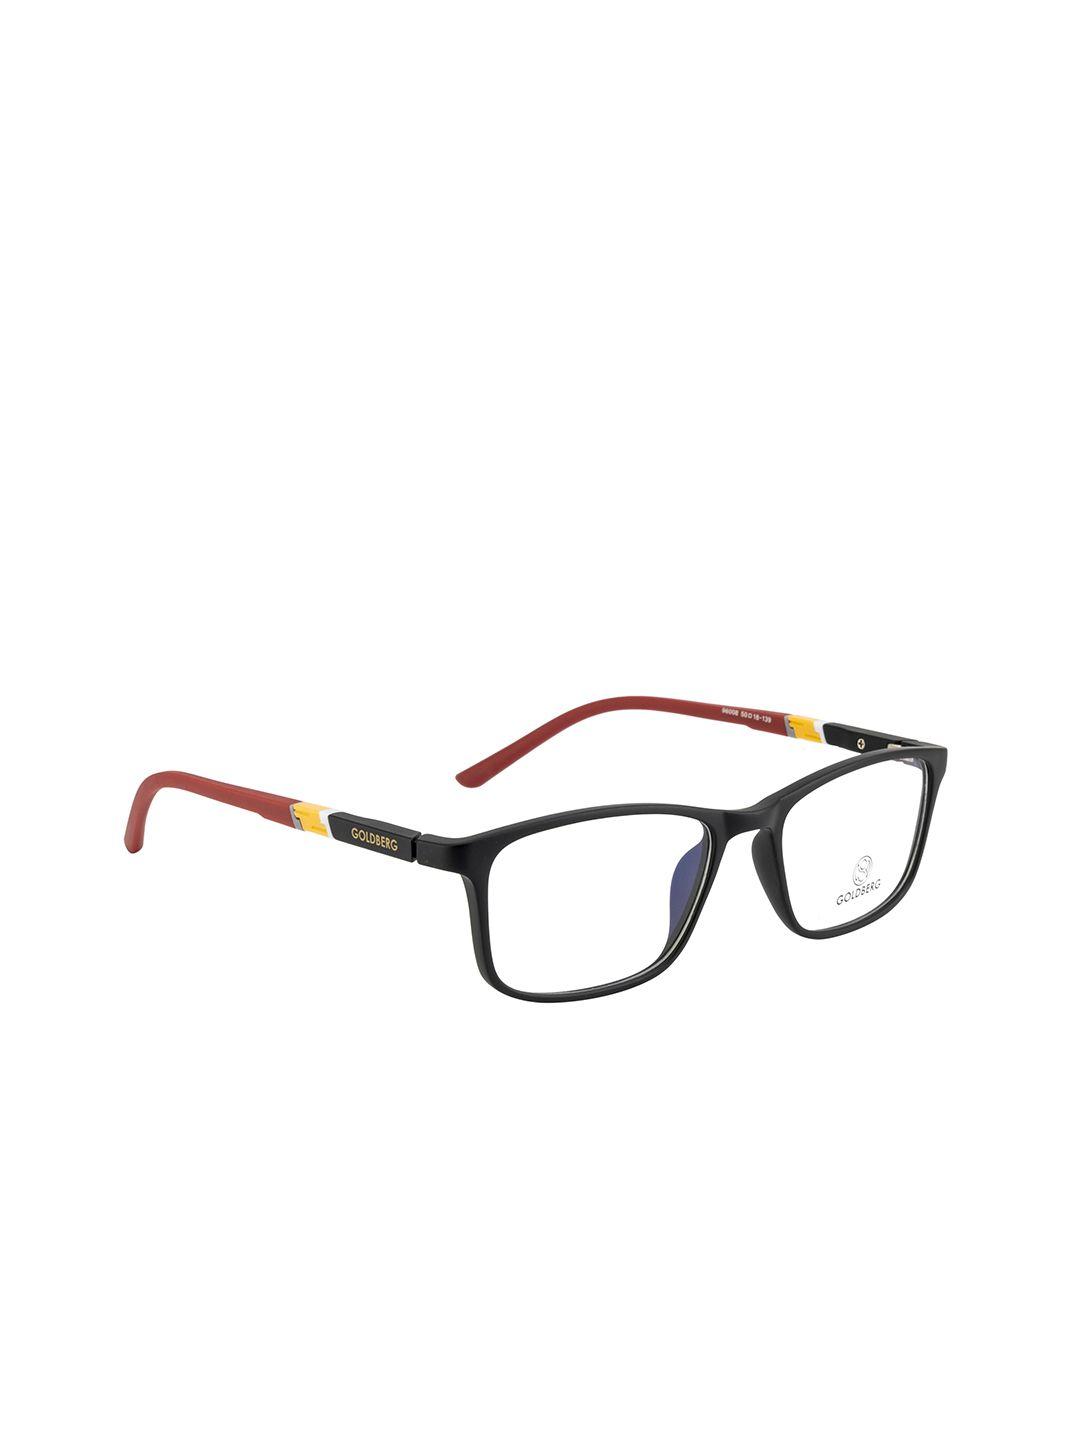 gold berg unisex black & red full rim wayfarer frames eyeglasses